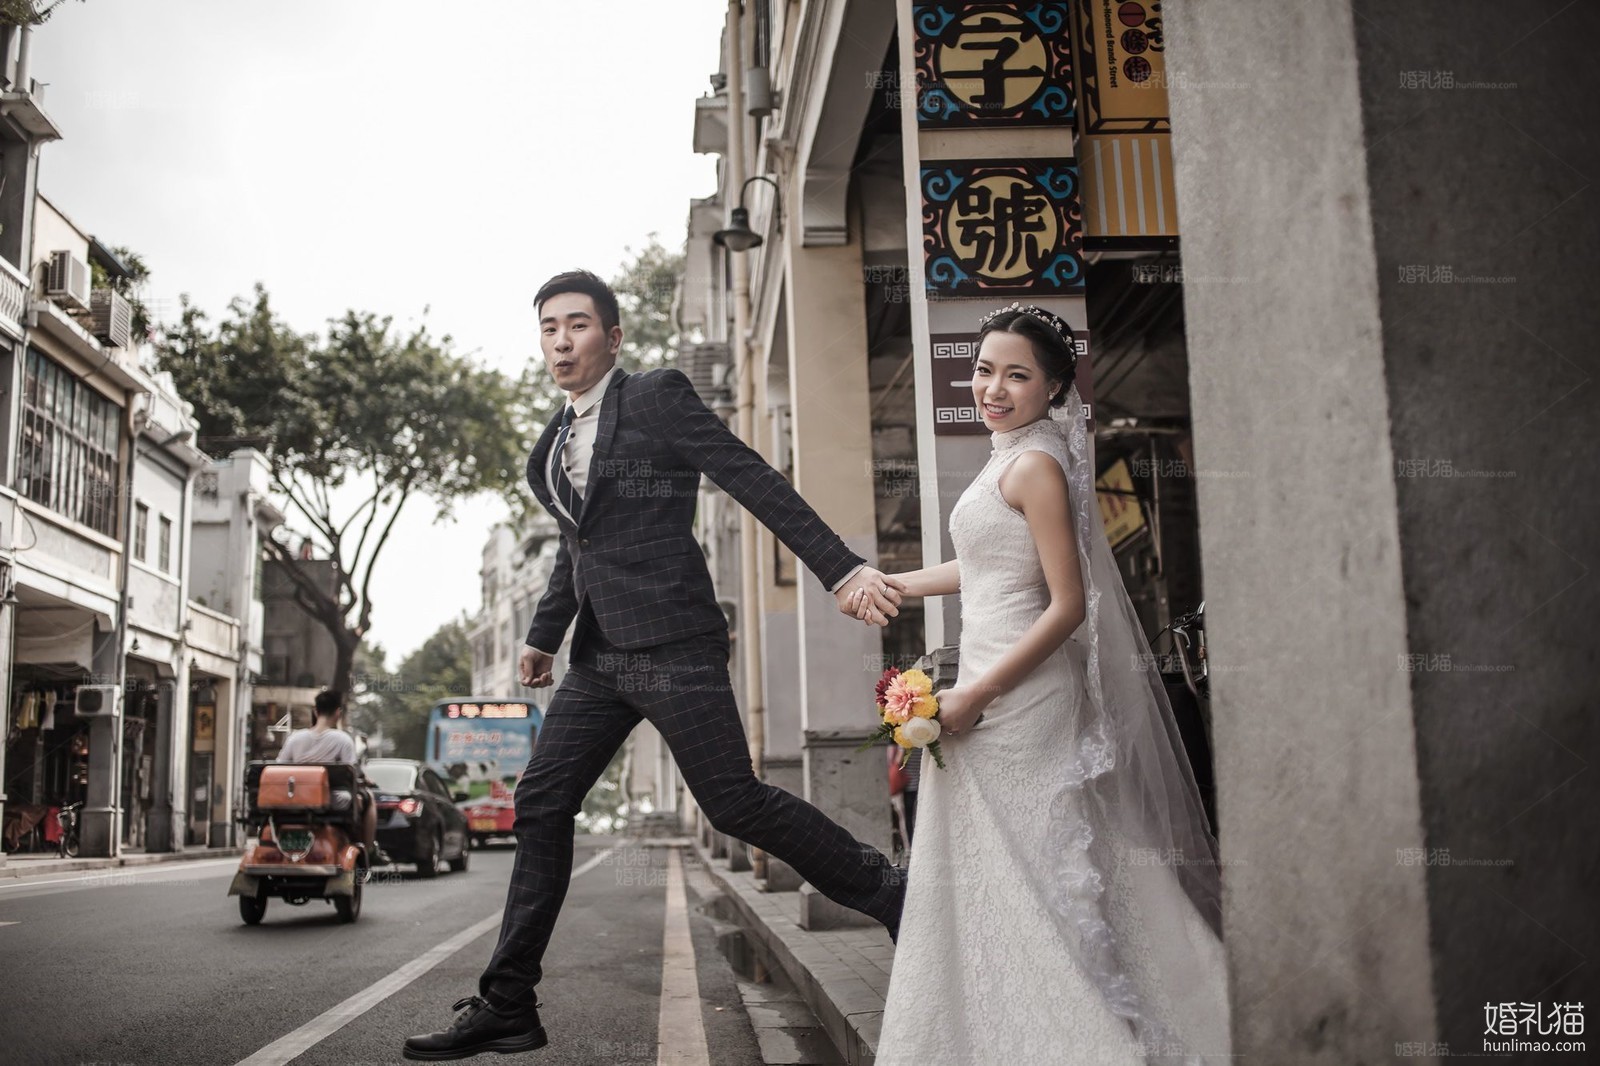 街拍俏皮搞怪婚纱照图片,[街拍, 俏皮搞怪],广州婚纱照,婚纱照图片